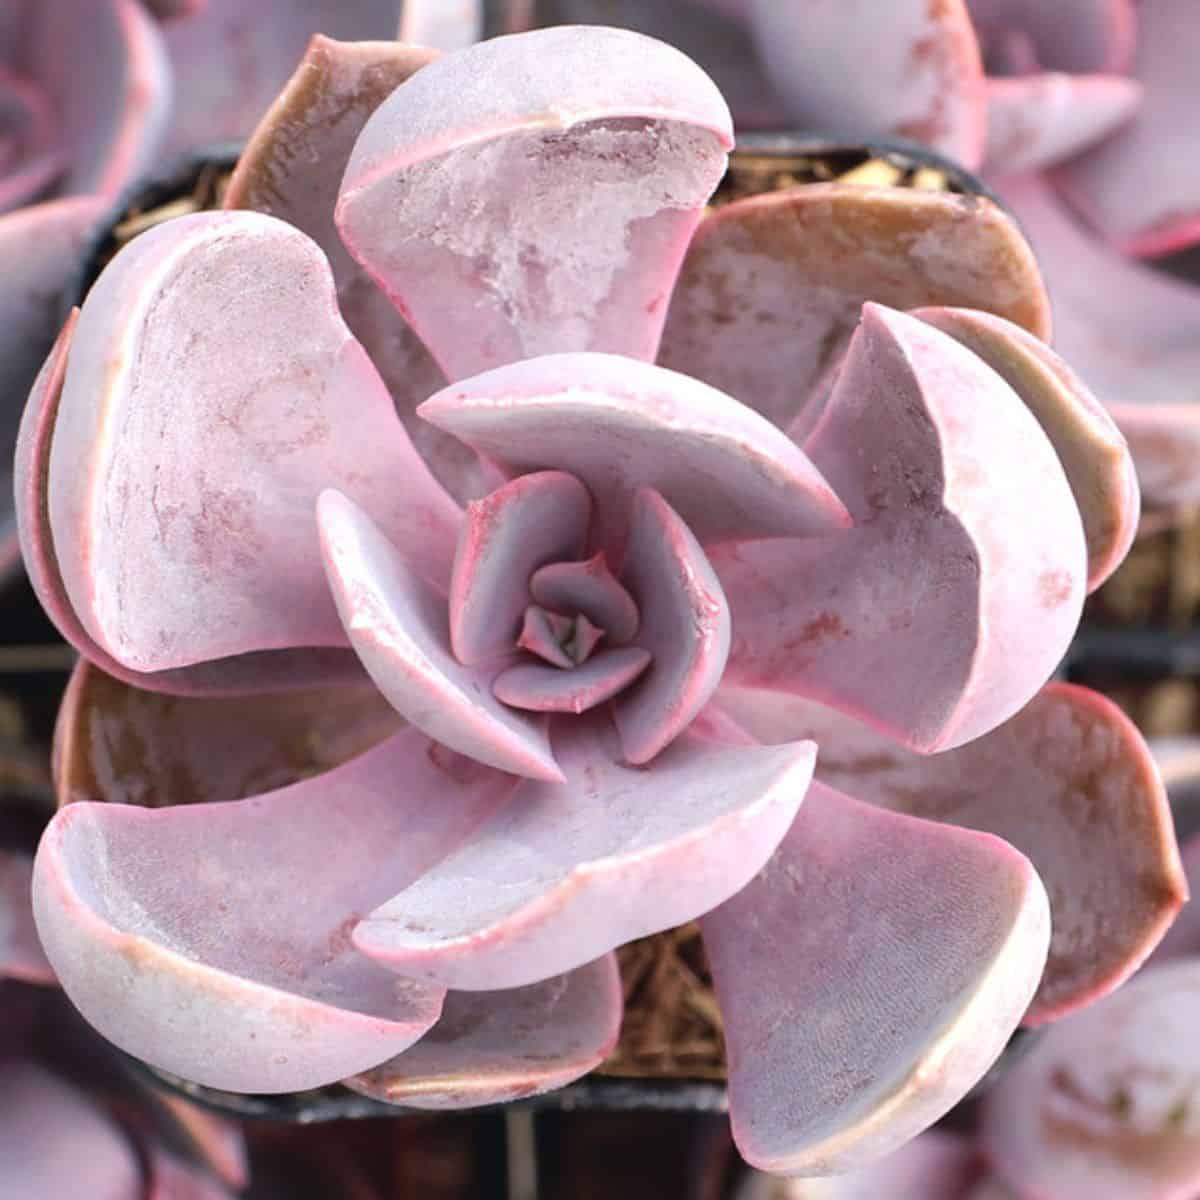 Echeveria ‘Purple Pearl’ growing in a pot.